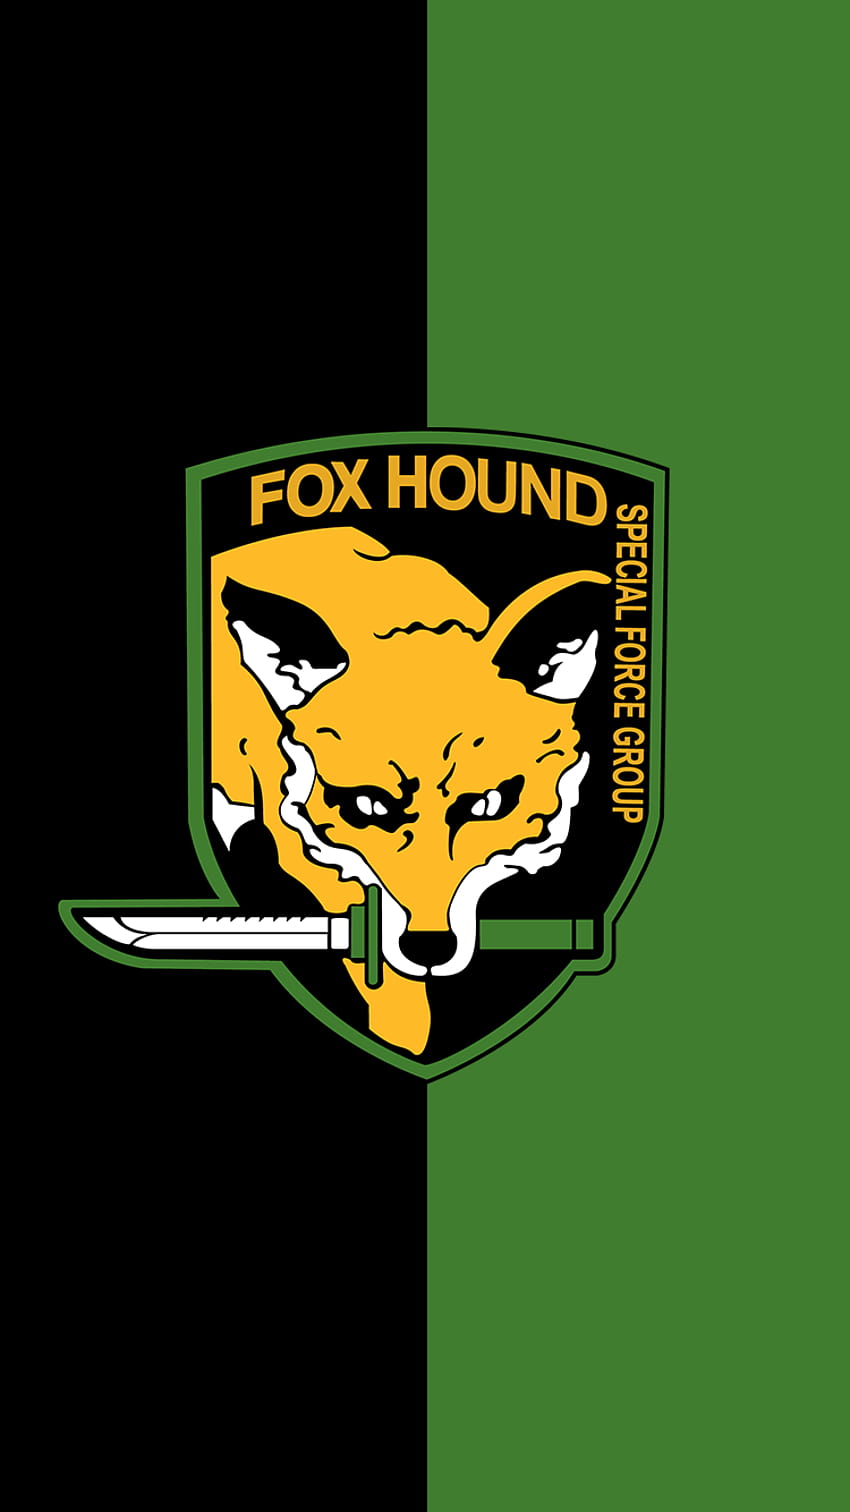 Ini seekor Foxhound. Menikmati! : metalgearsolid, foxhound mgs wallpaper ponsel HD